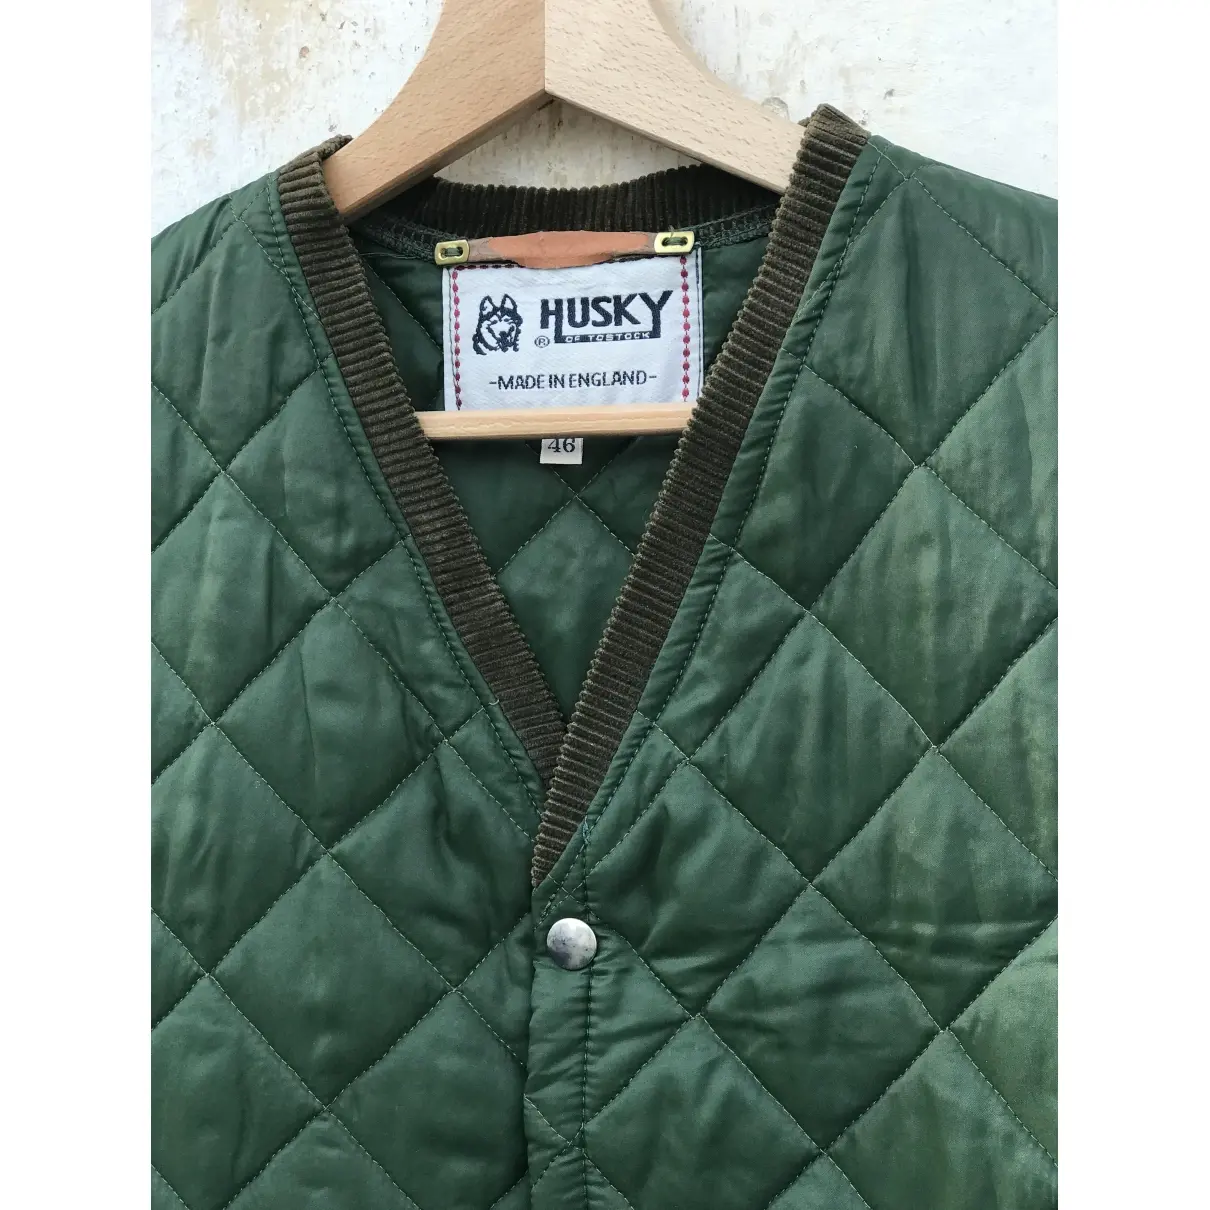 Buy Husky Jacket online